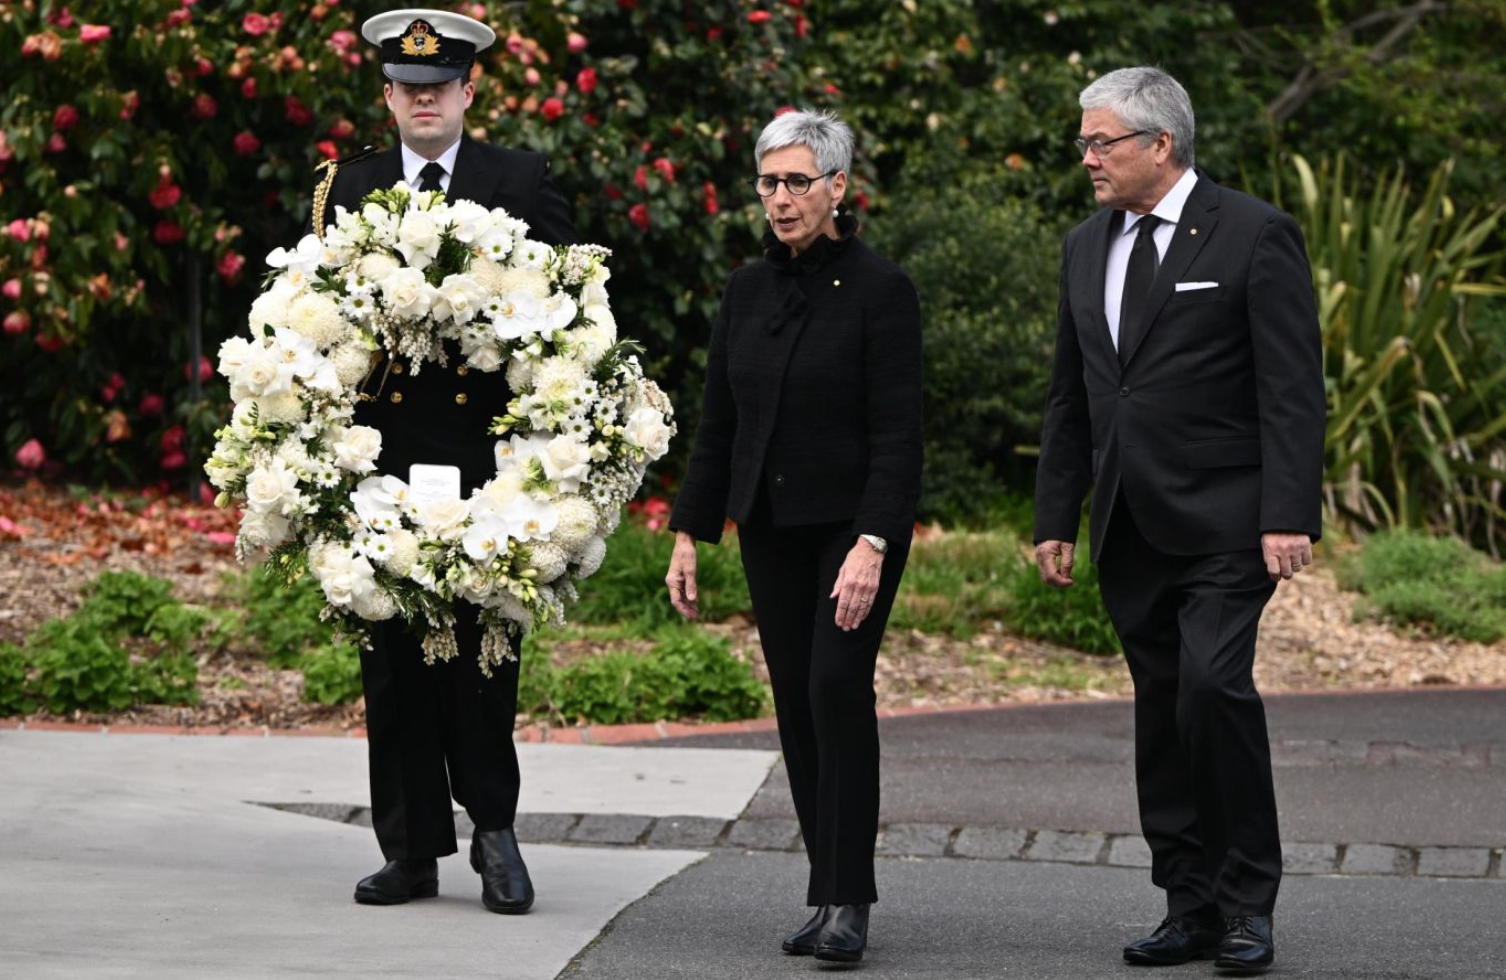 Thống đốc bang Victoria, Australia - bà Linda Dessau và chồng Anthony Howard đến đặt vòng hoa trước cổng Tòa nhà Chính phủ ở Melbourne.